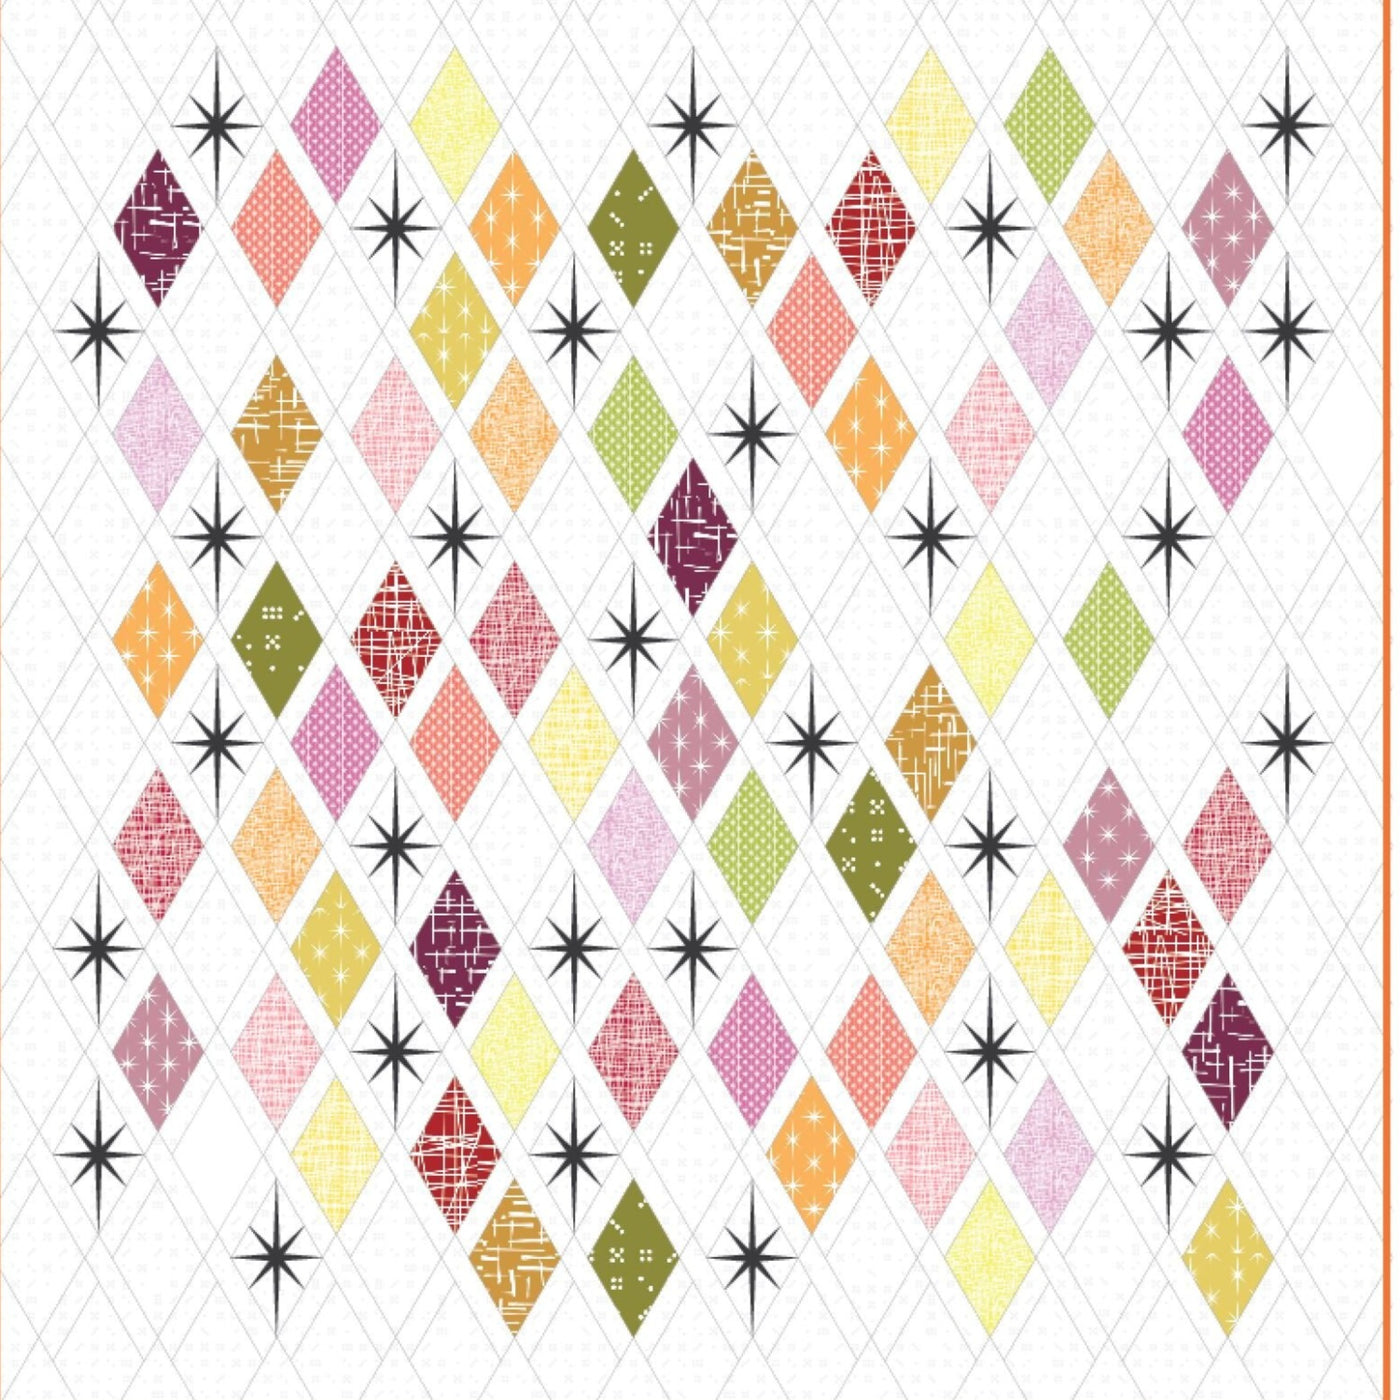 Atomic StarBurst Quilt Pattern by Violet Craft